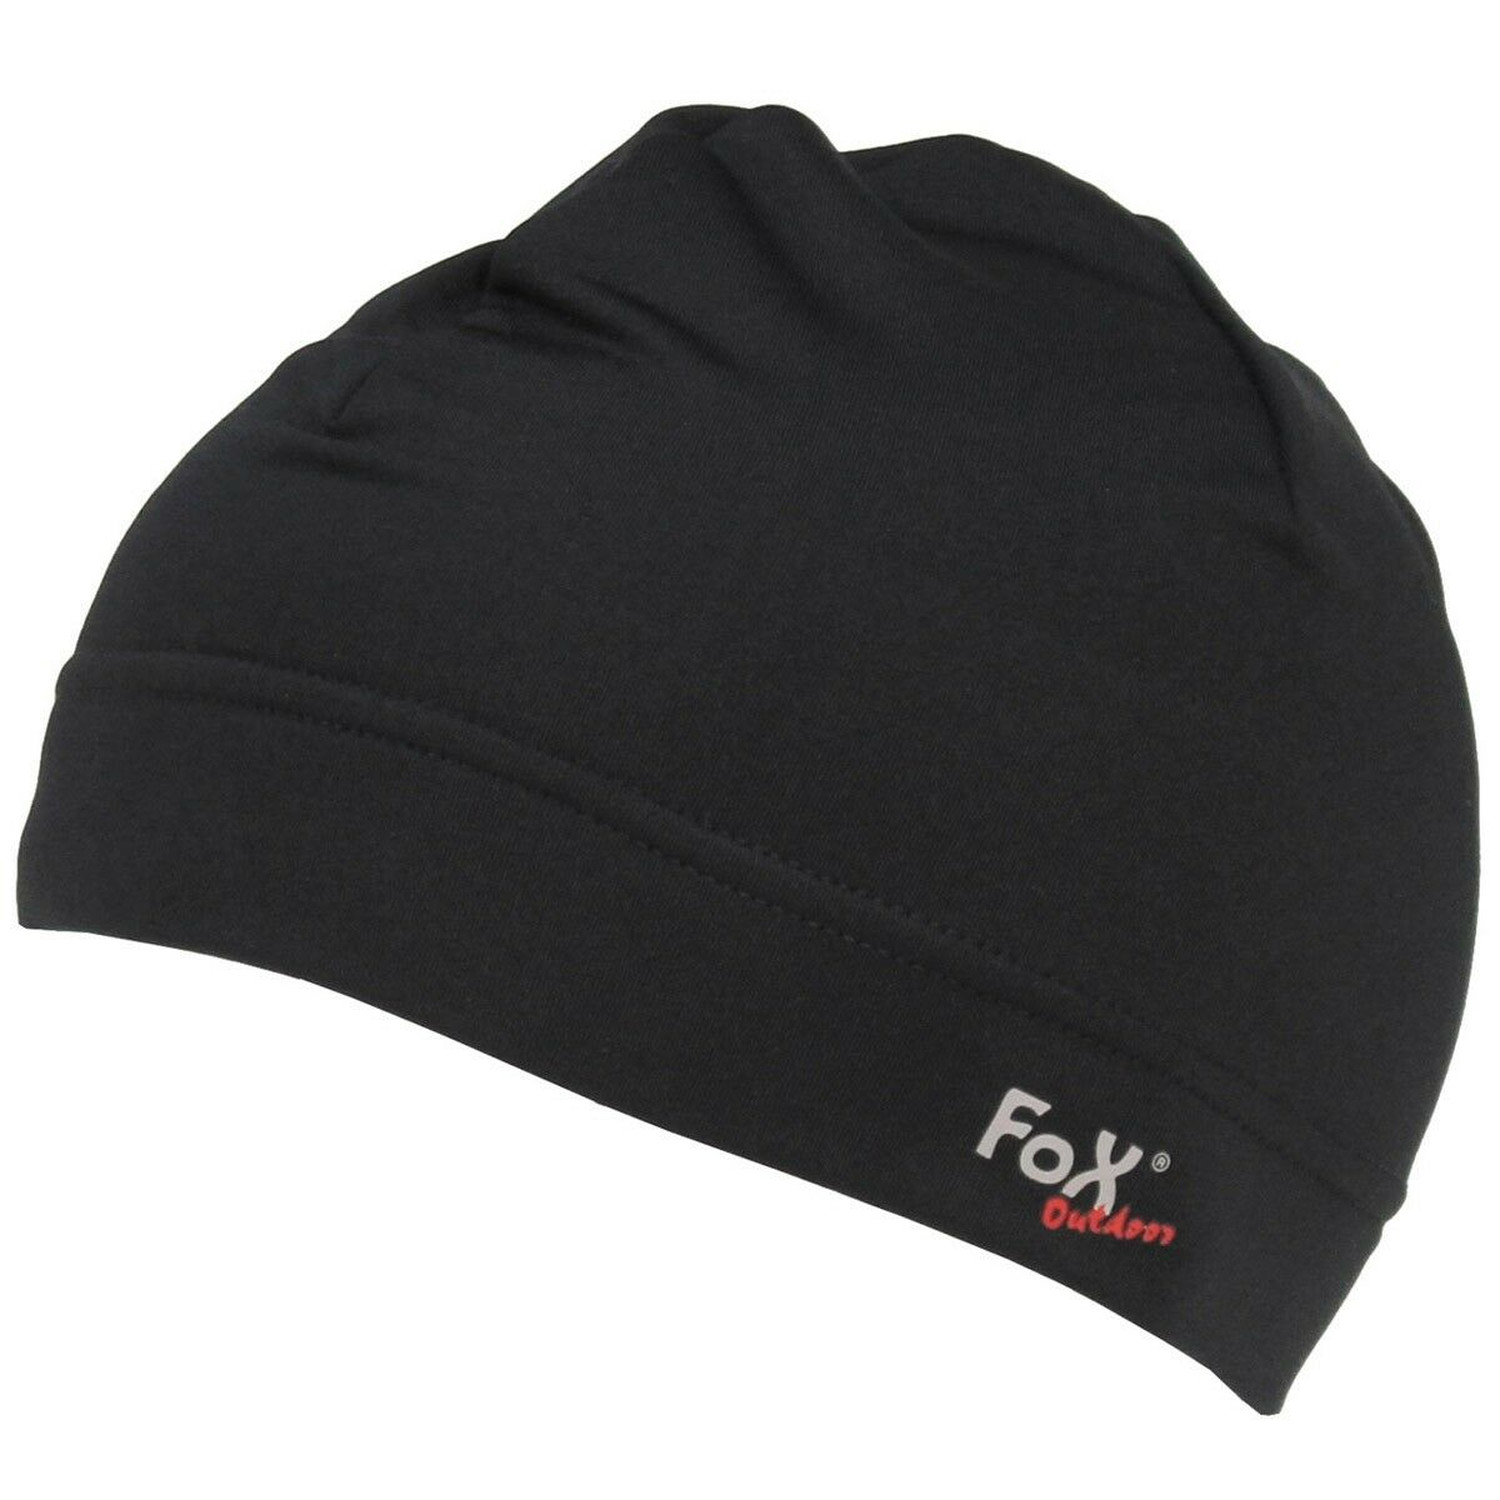 Mütze Run von FoX Outdoor in Schwarz, Größe L / XL